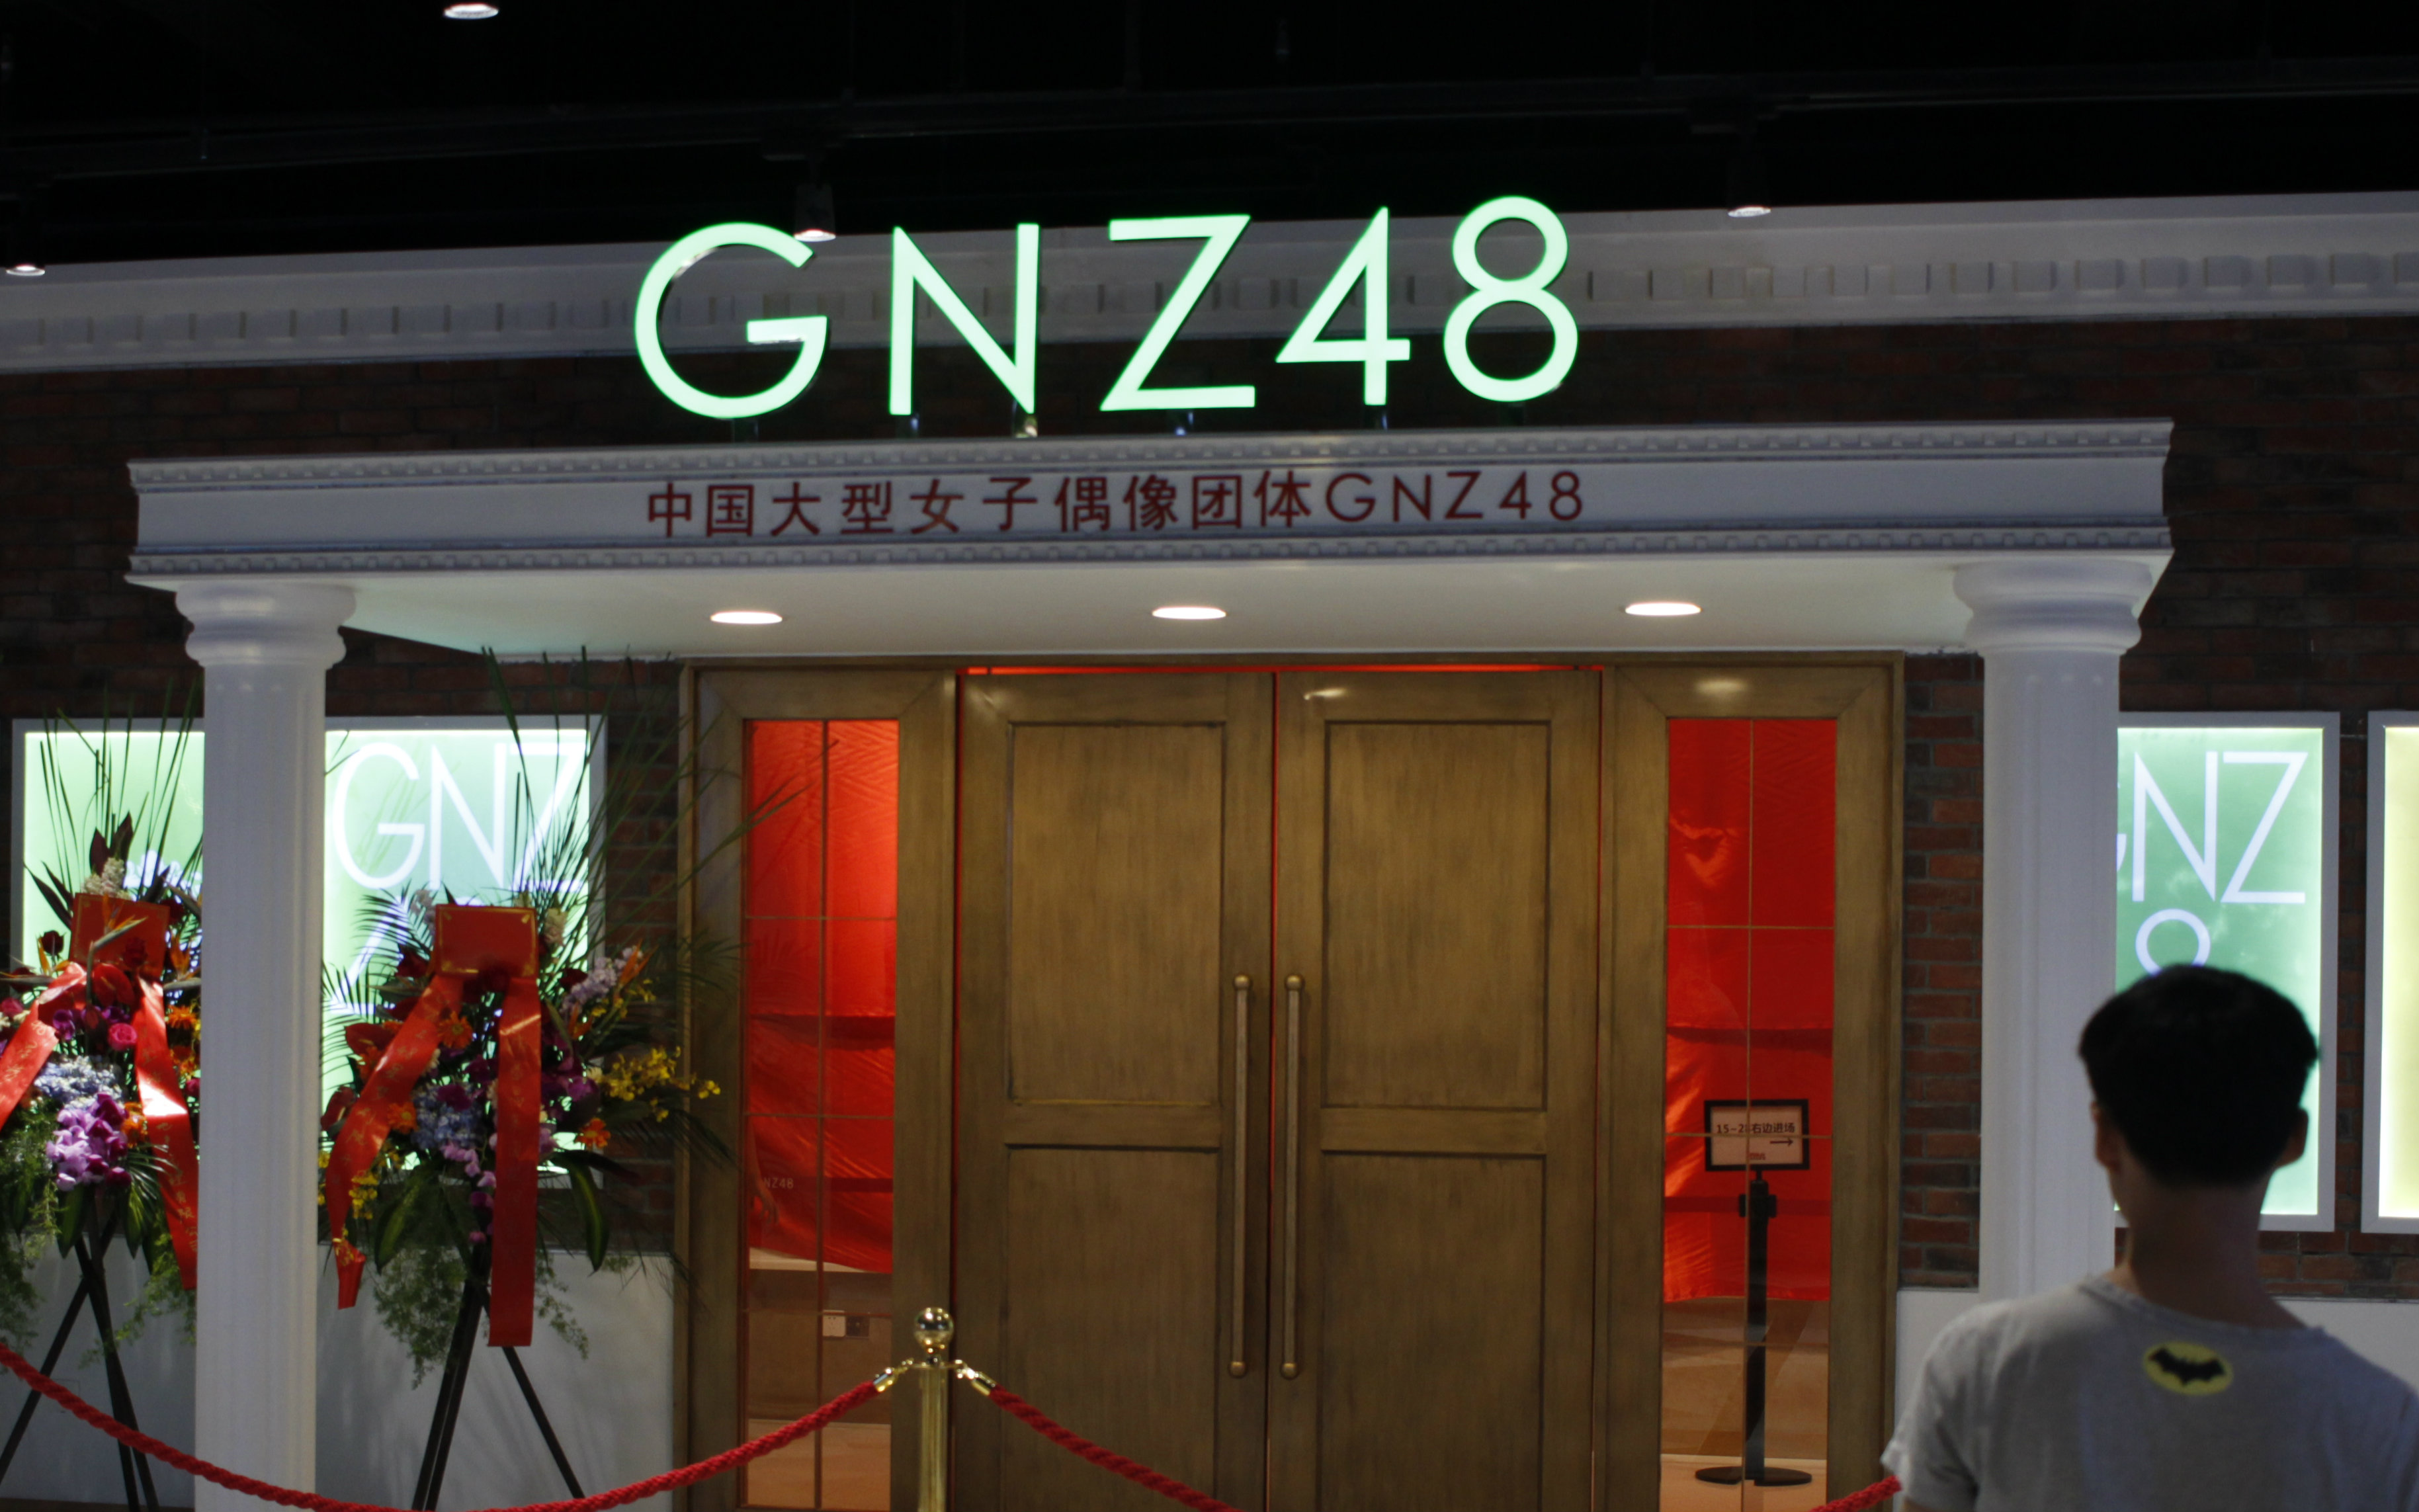 凶真gnz48星梦剧院首演记录2中泰内部及周边环境探索